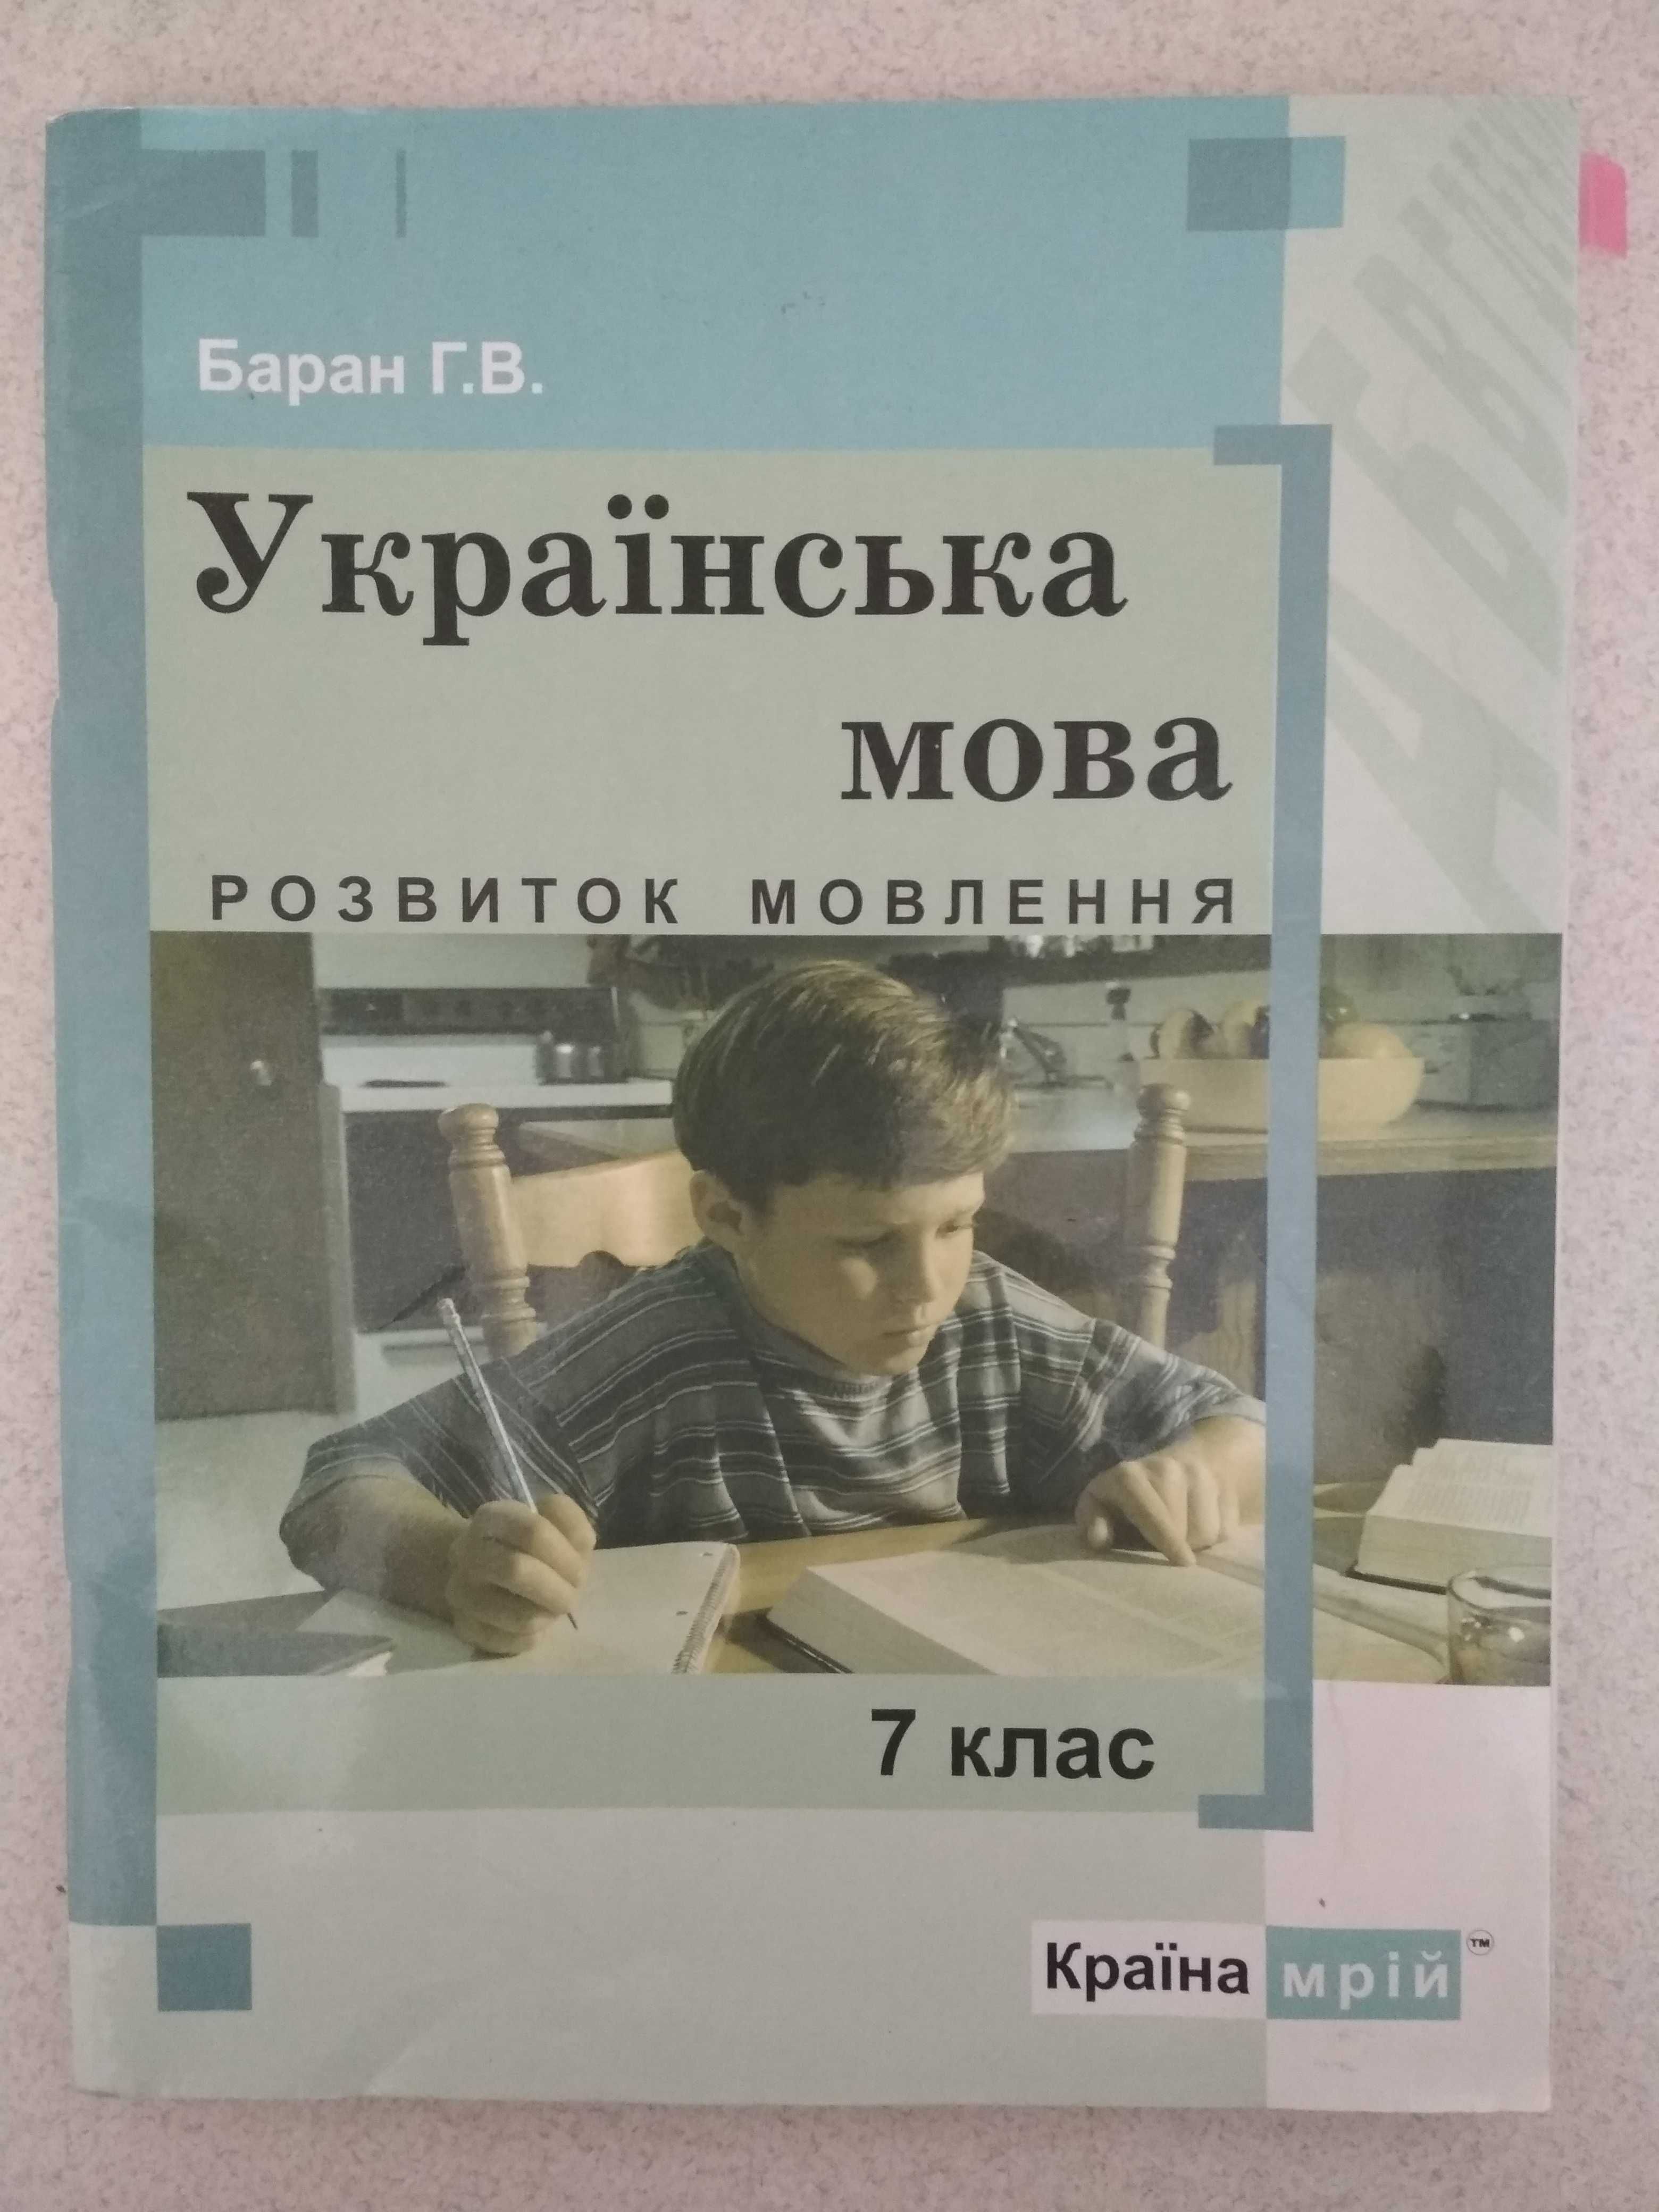 7 клас українська мова, розвиток мовлення Баран Г. В.